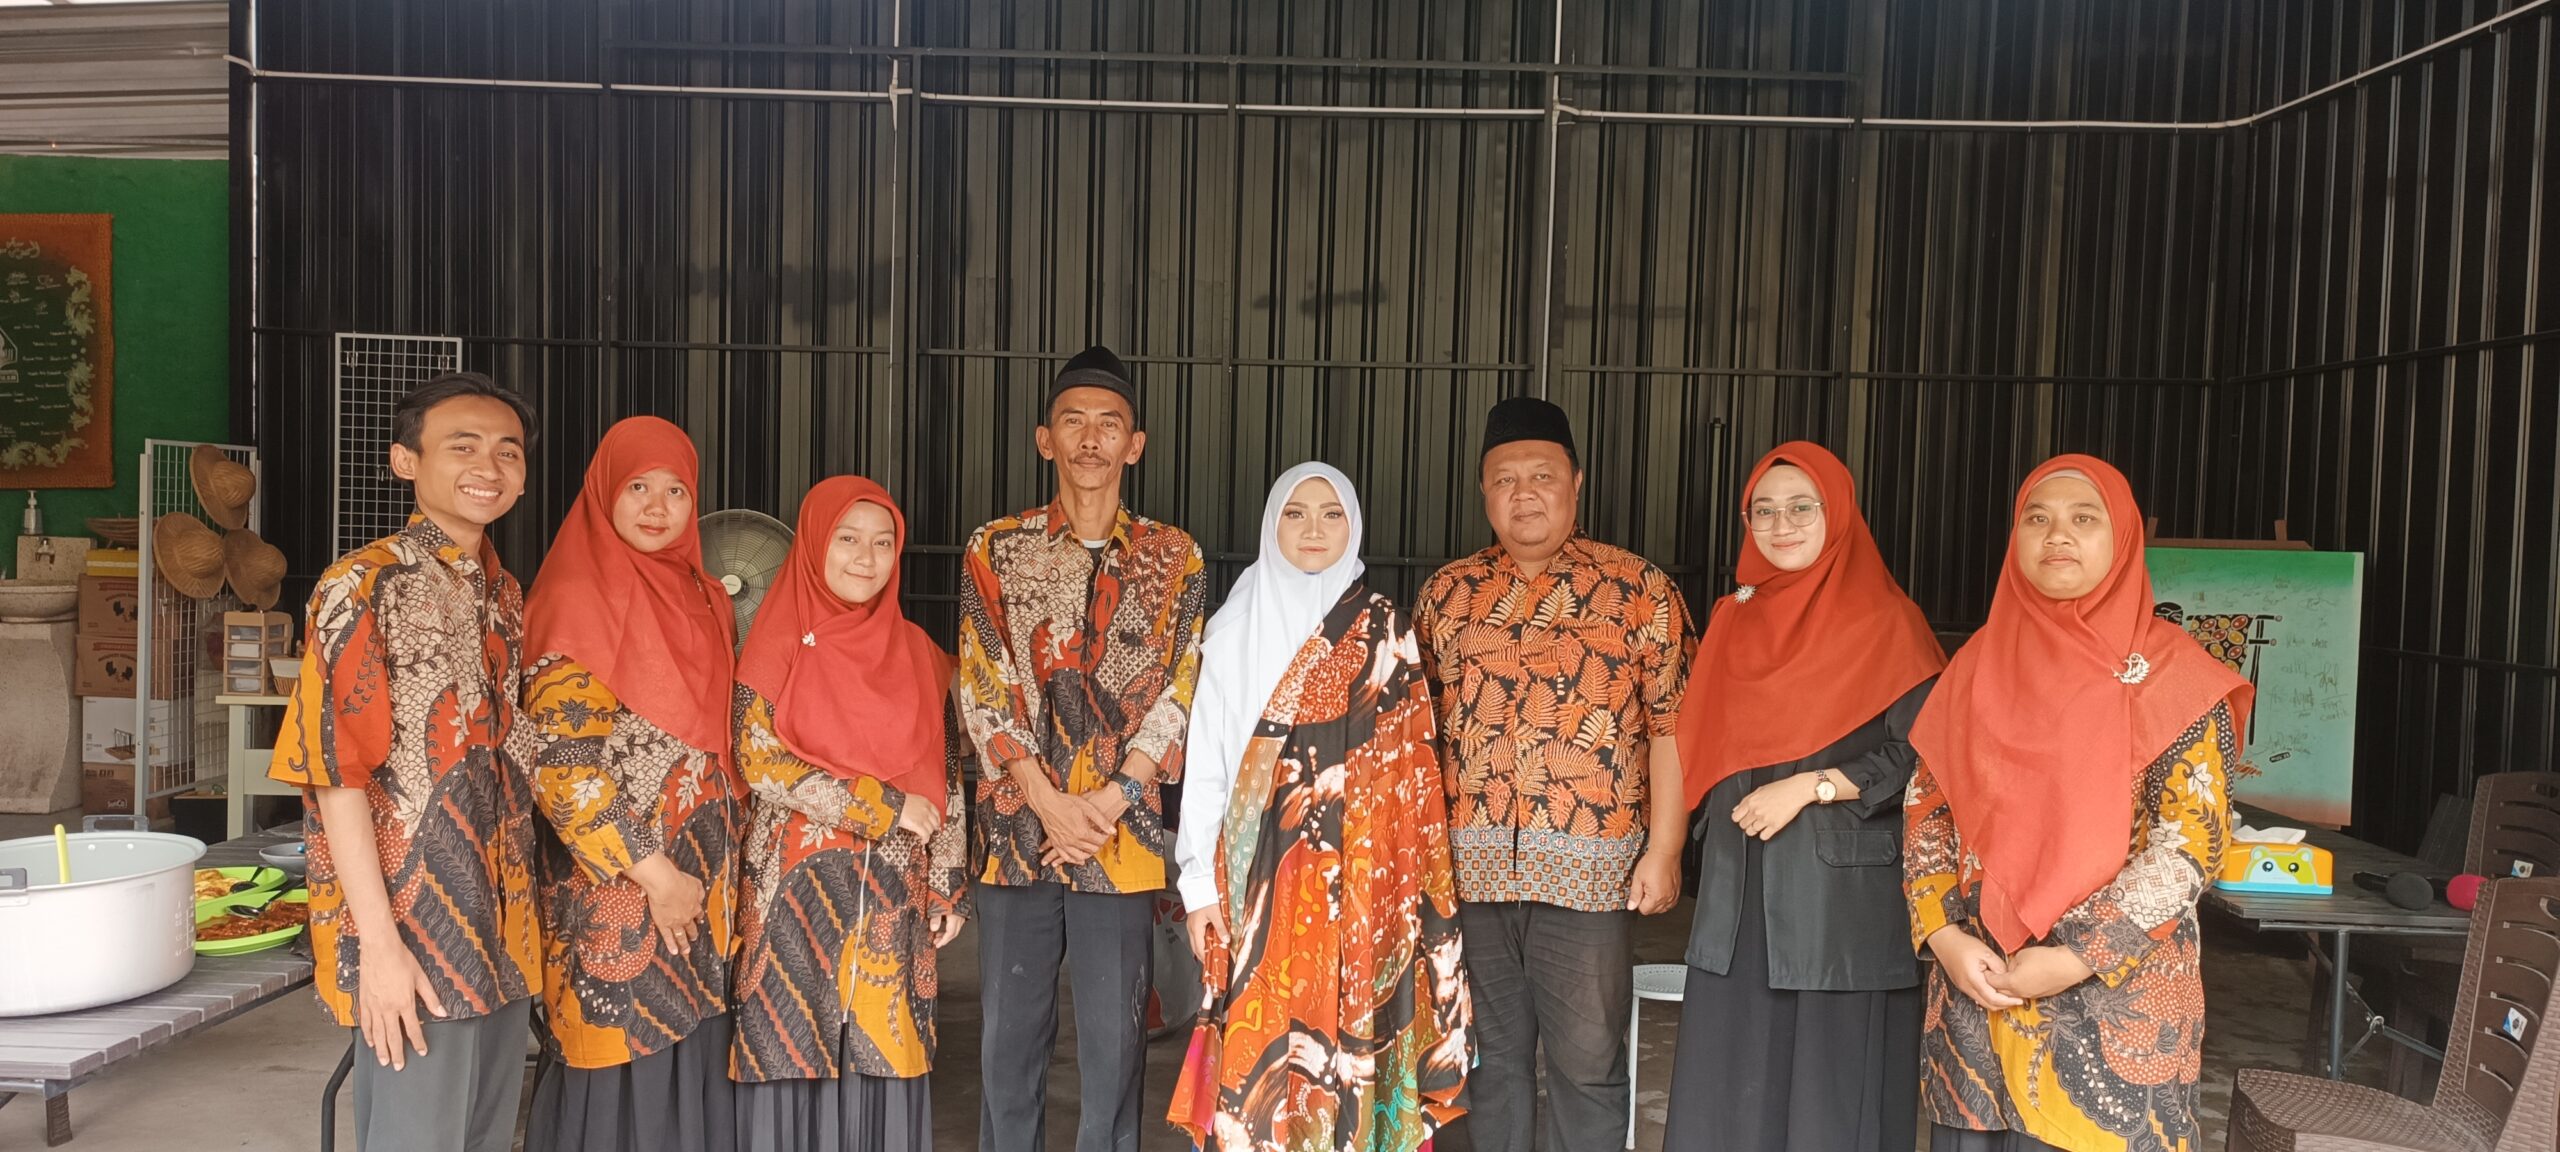 Kepala Sekolah MTs. Huliyyatul Ilmi Alik Widyana, S. T., Bersama Dengan Dewan Guru